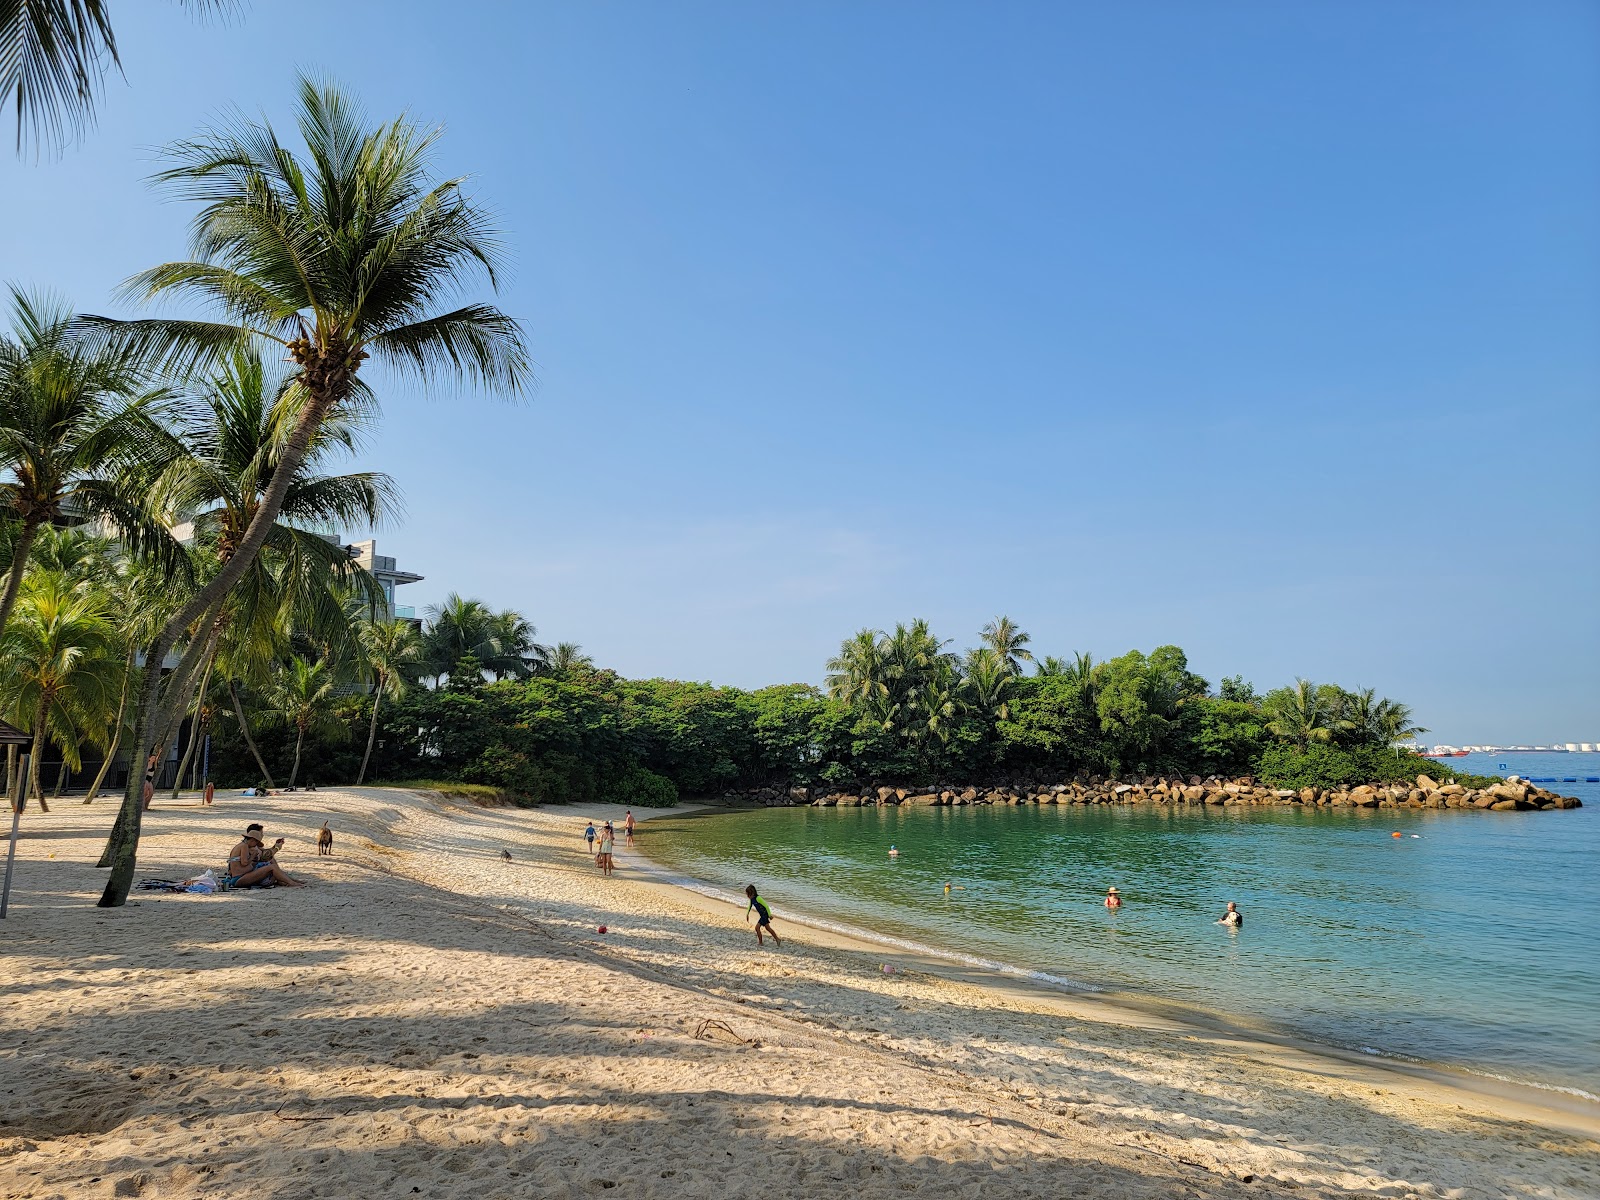 Foto af Tanjong Beach - populært sted blandt afslapningskendere